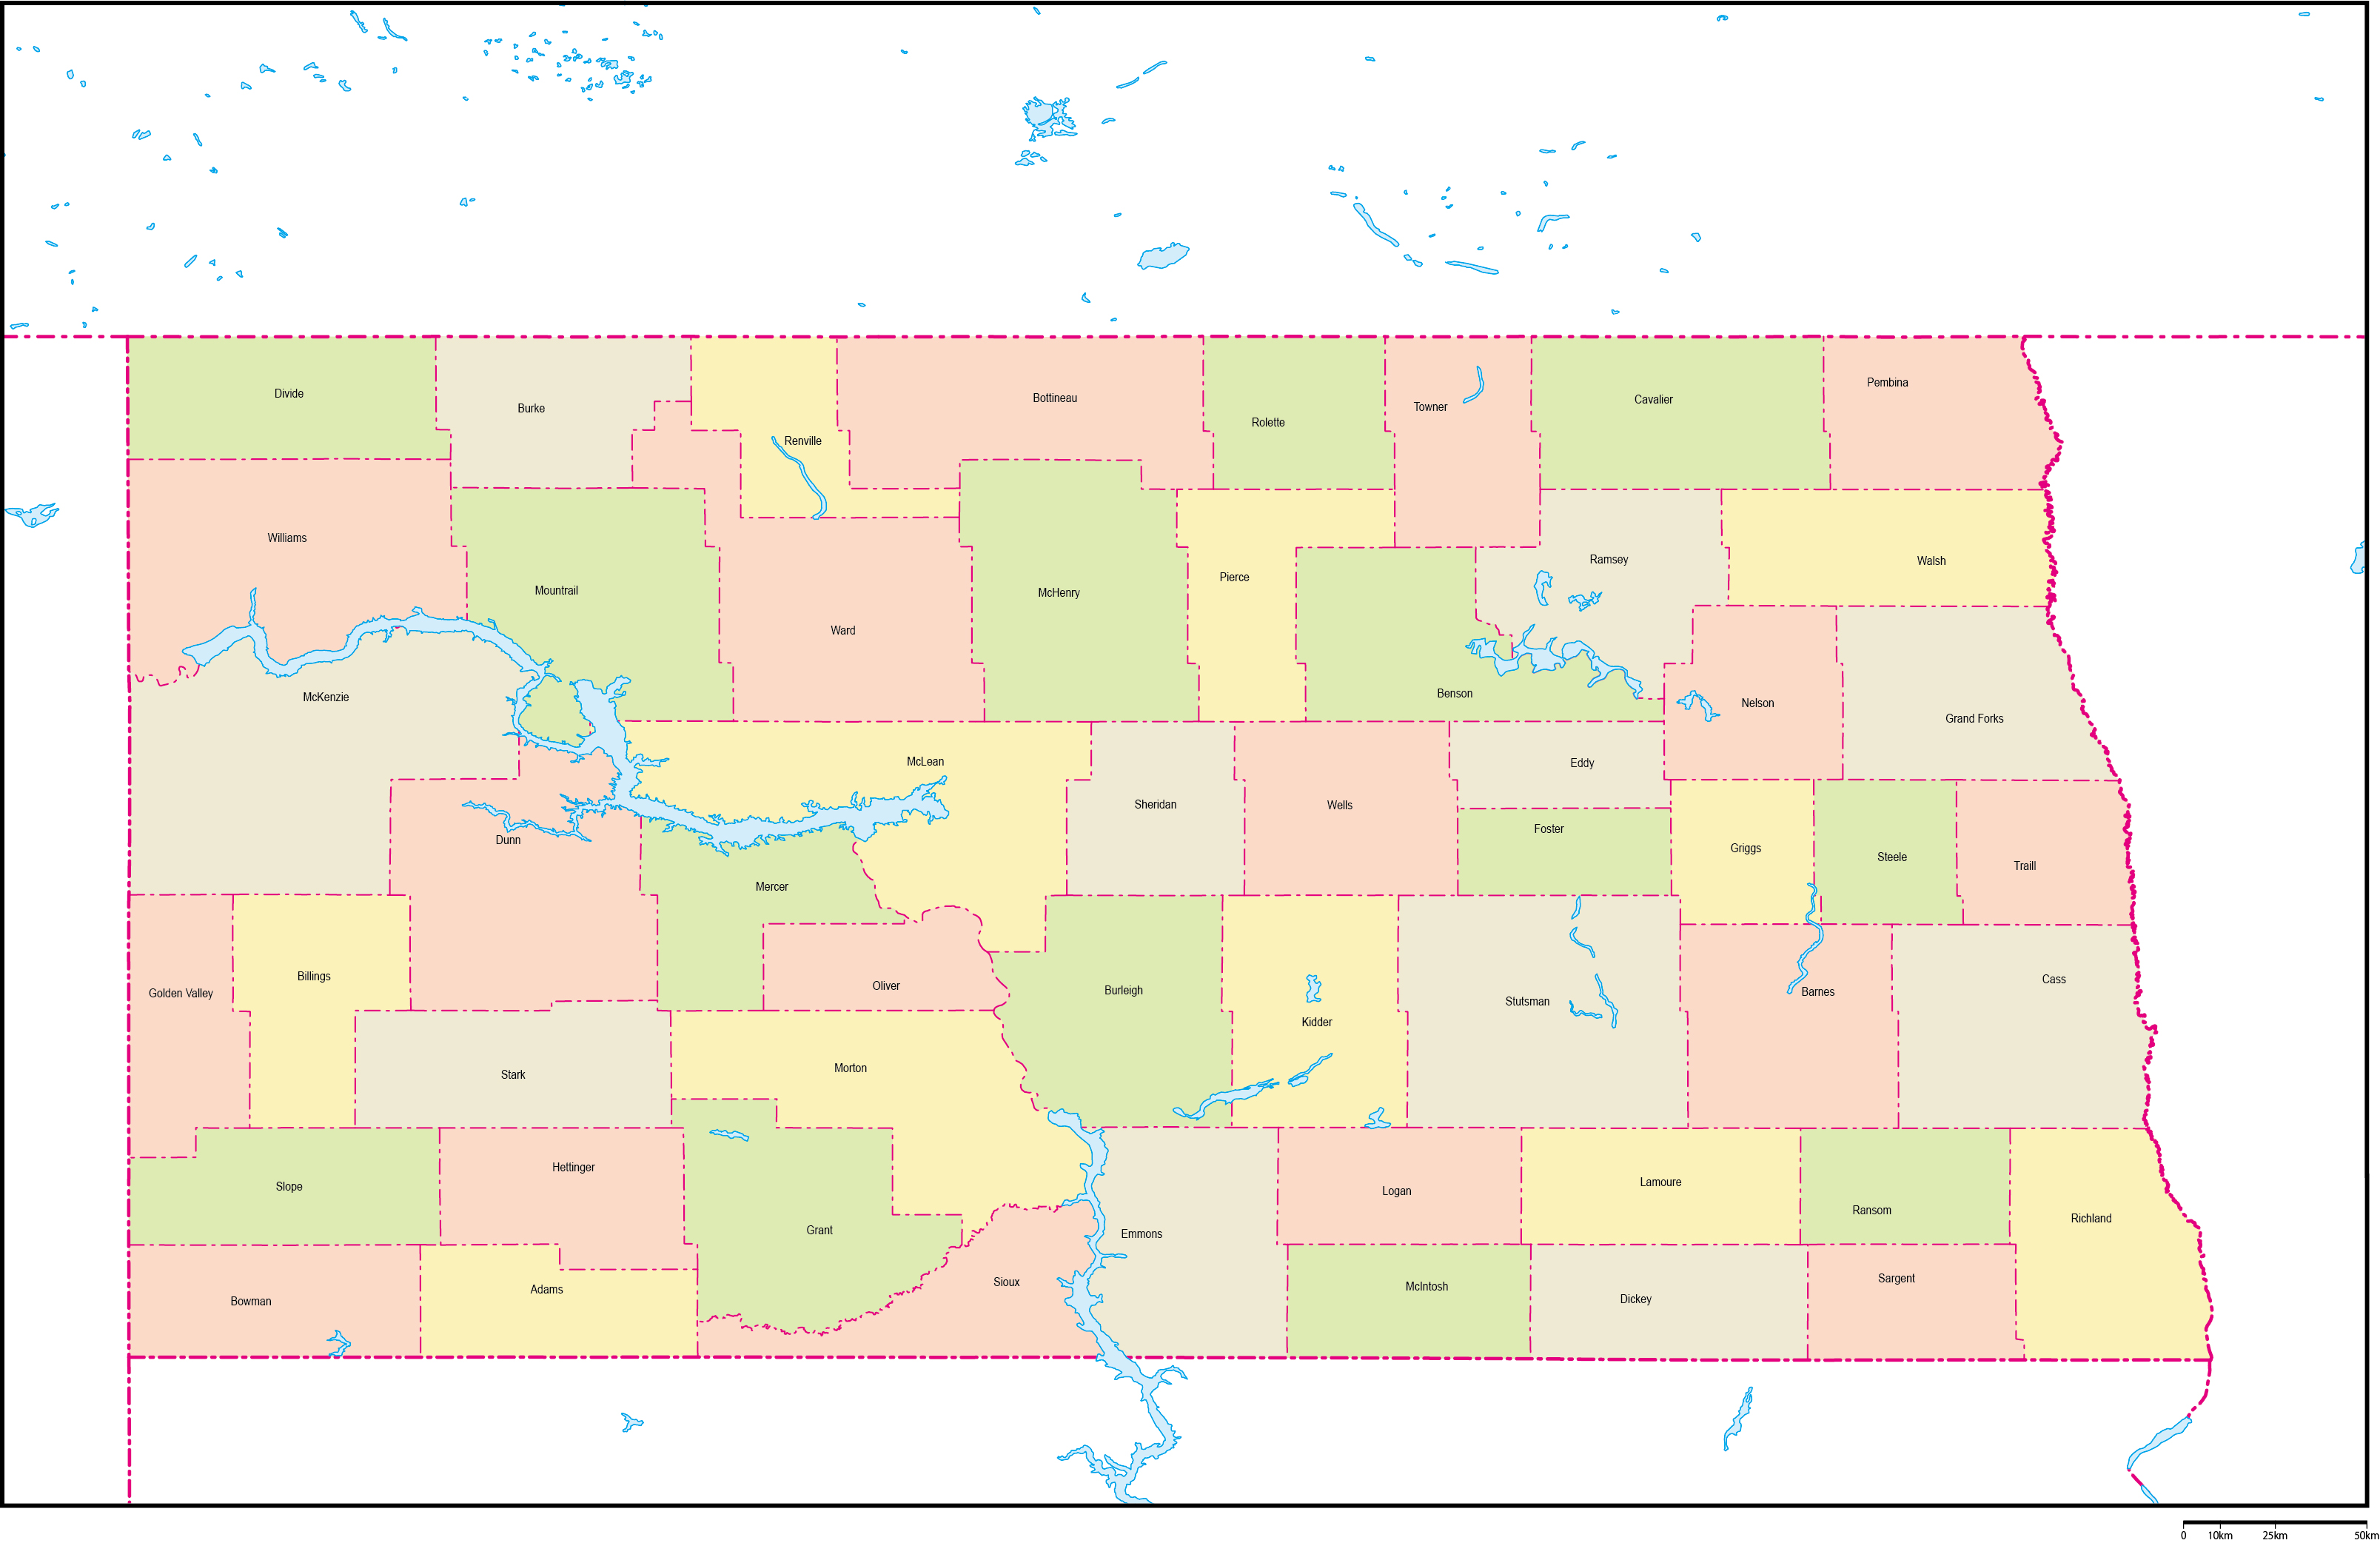 ノースダコタ州郡色分け地図郡名あり(英語)フリーデータの画像